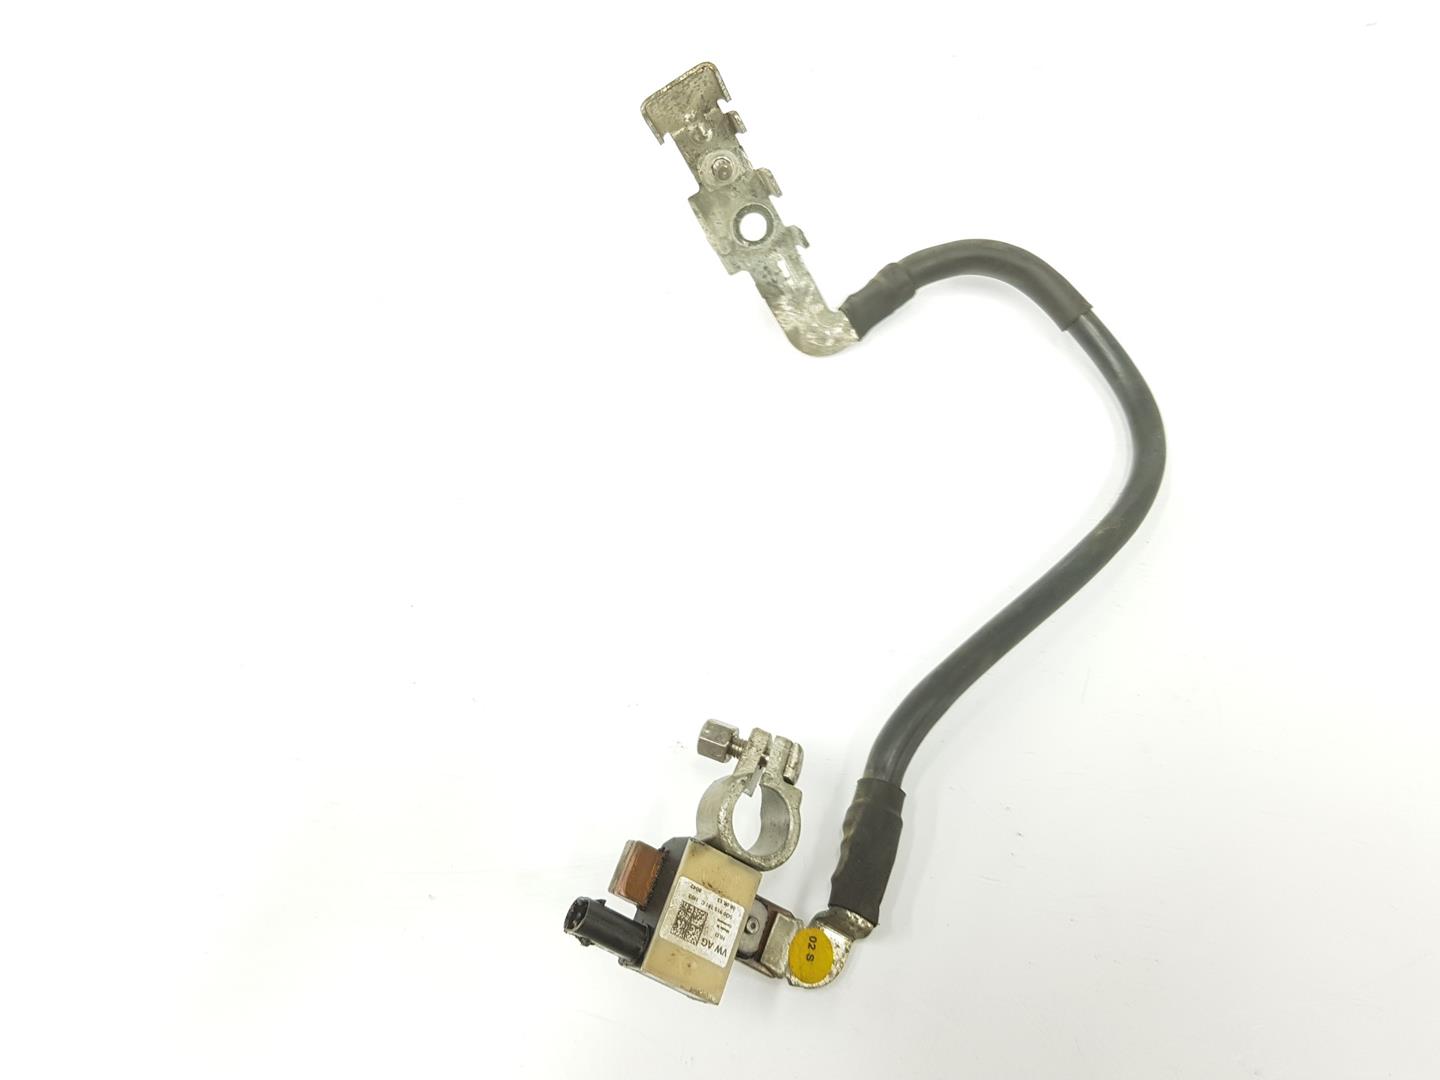 VOLKSWAGEN Variant VII TDI (2014-2024) Cable Harness 5Q0915181C, 5Q0915181C 19870860